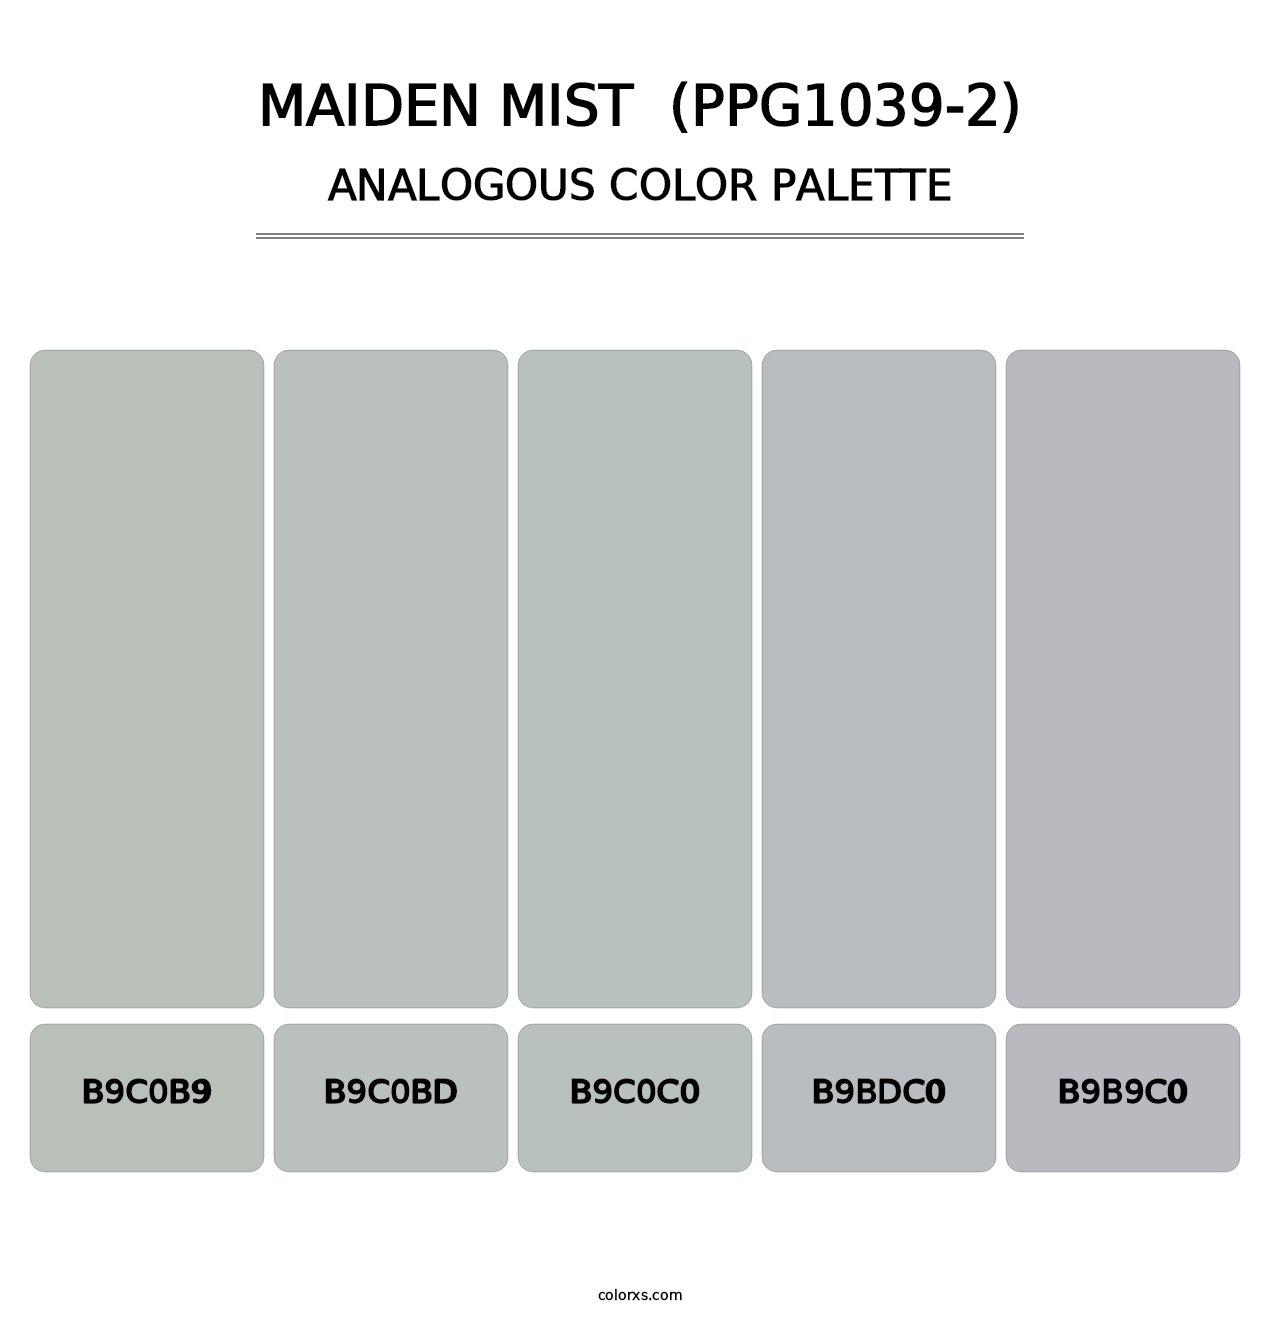 Maiden Mist  (PPG1039-2) - Analogous Color Palette